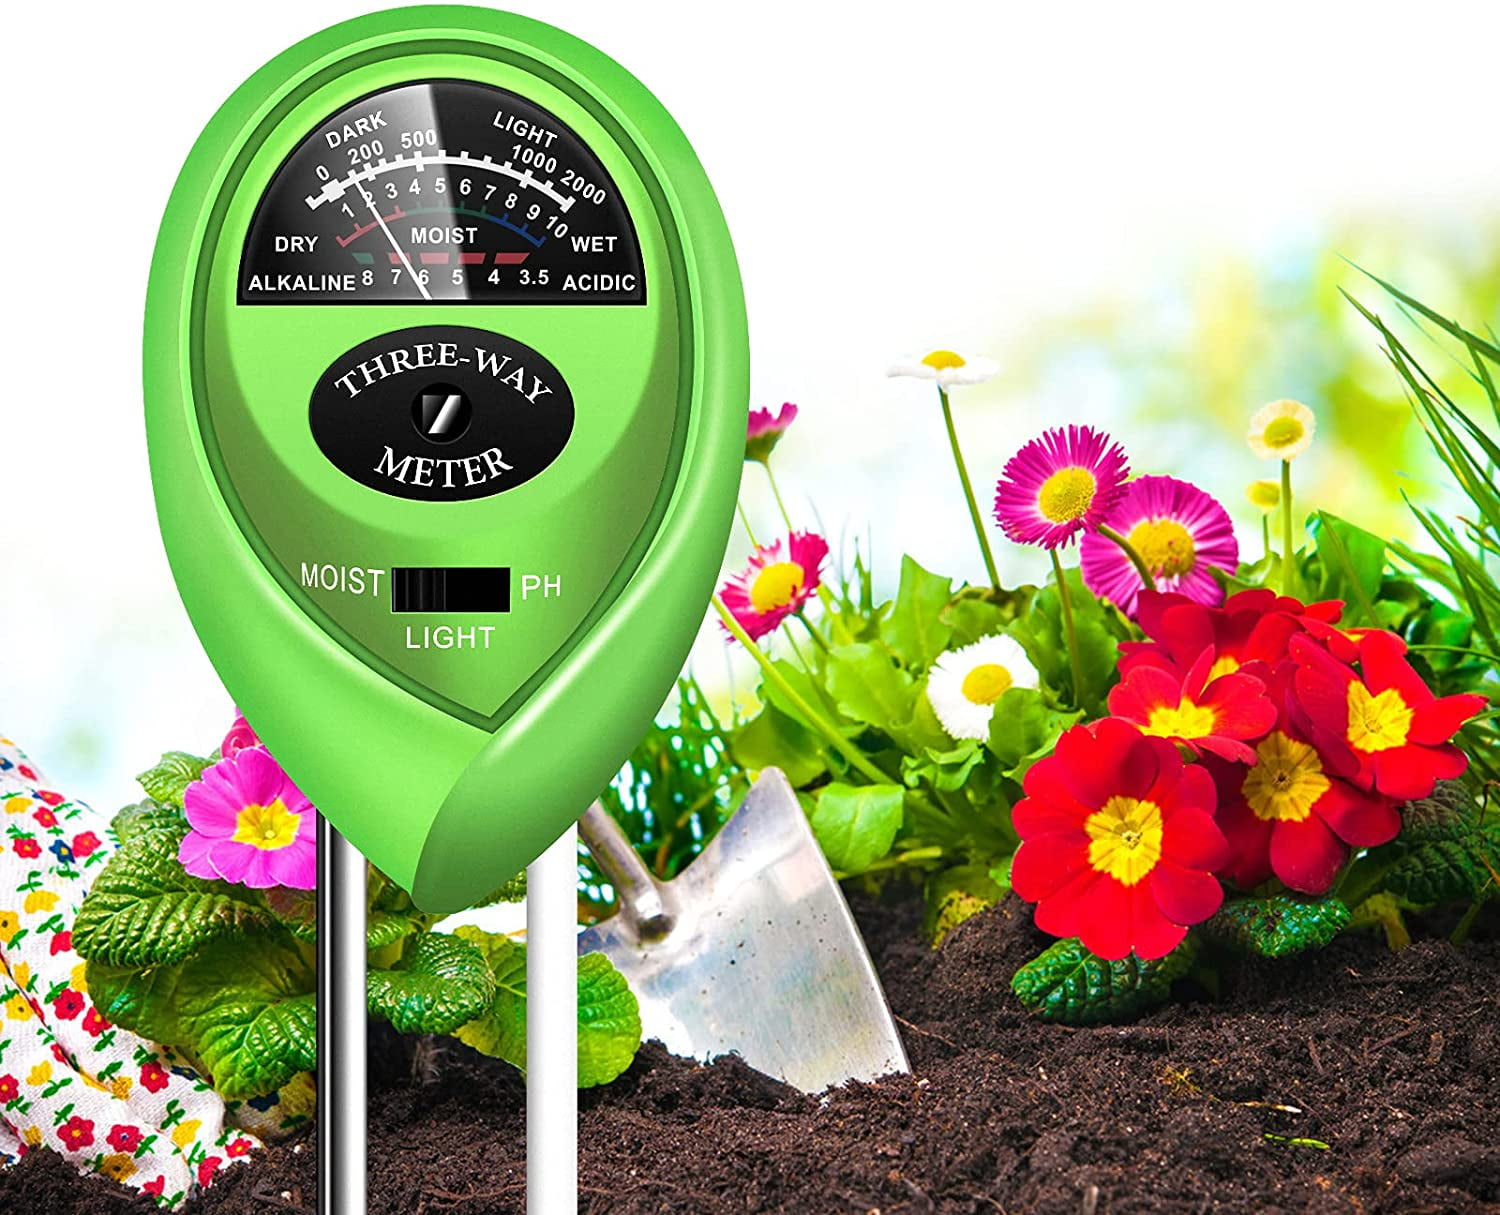 4 in1 Soil Tester Water PH Moisture Light Test Meter Kit For Garden Plant Flower 